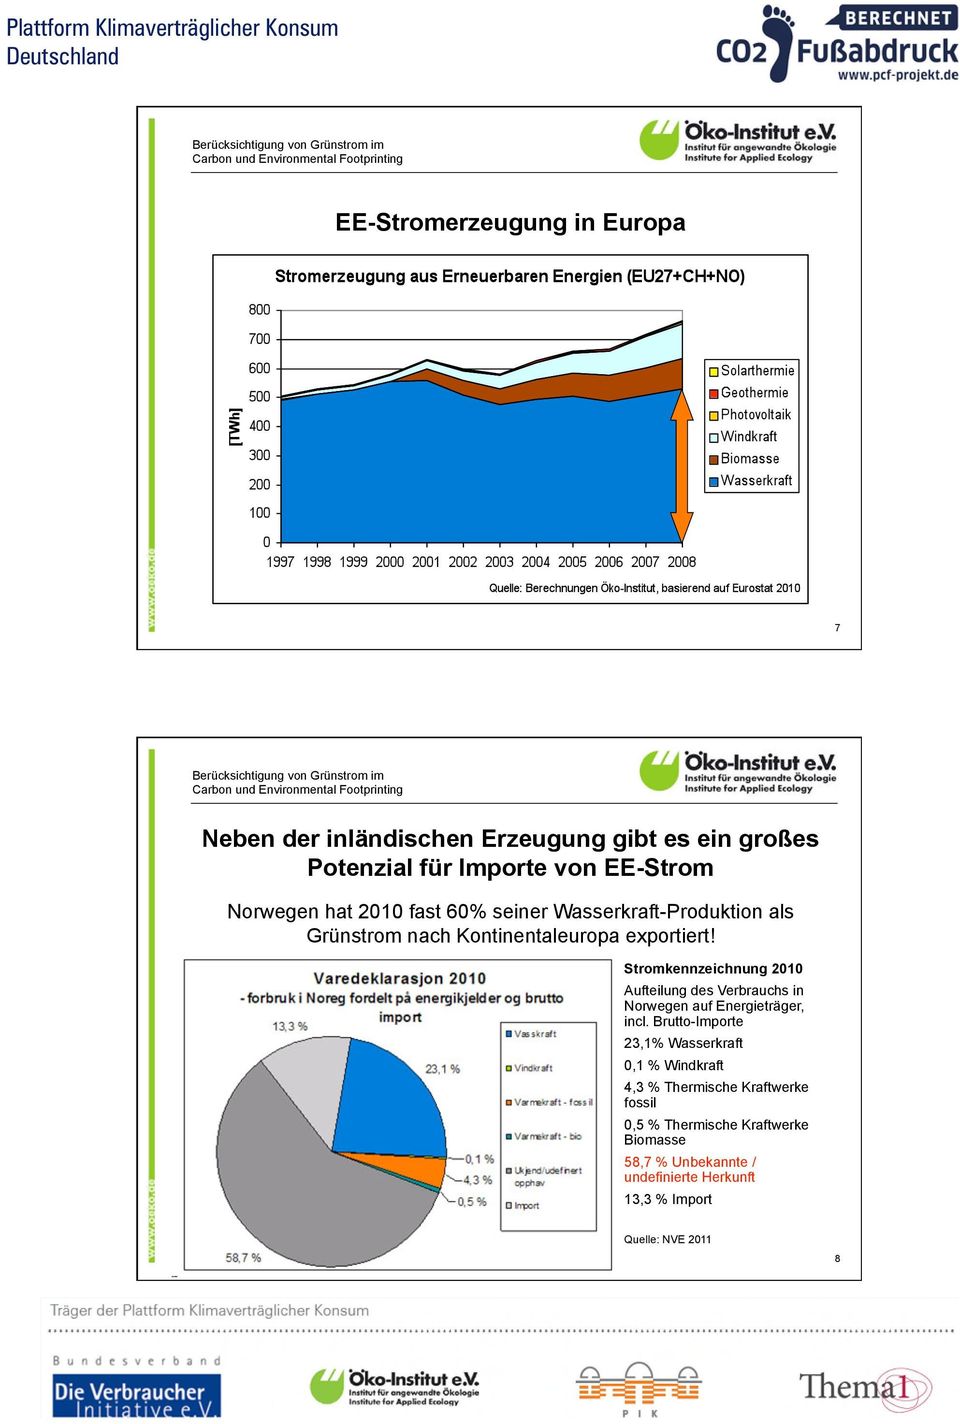 Stromkennzeichnung 2010 Aufteilung des Verbrauchs in Norwegen auf Energieträger, incl.